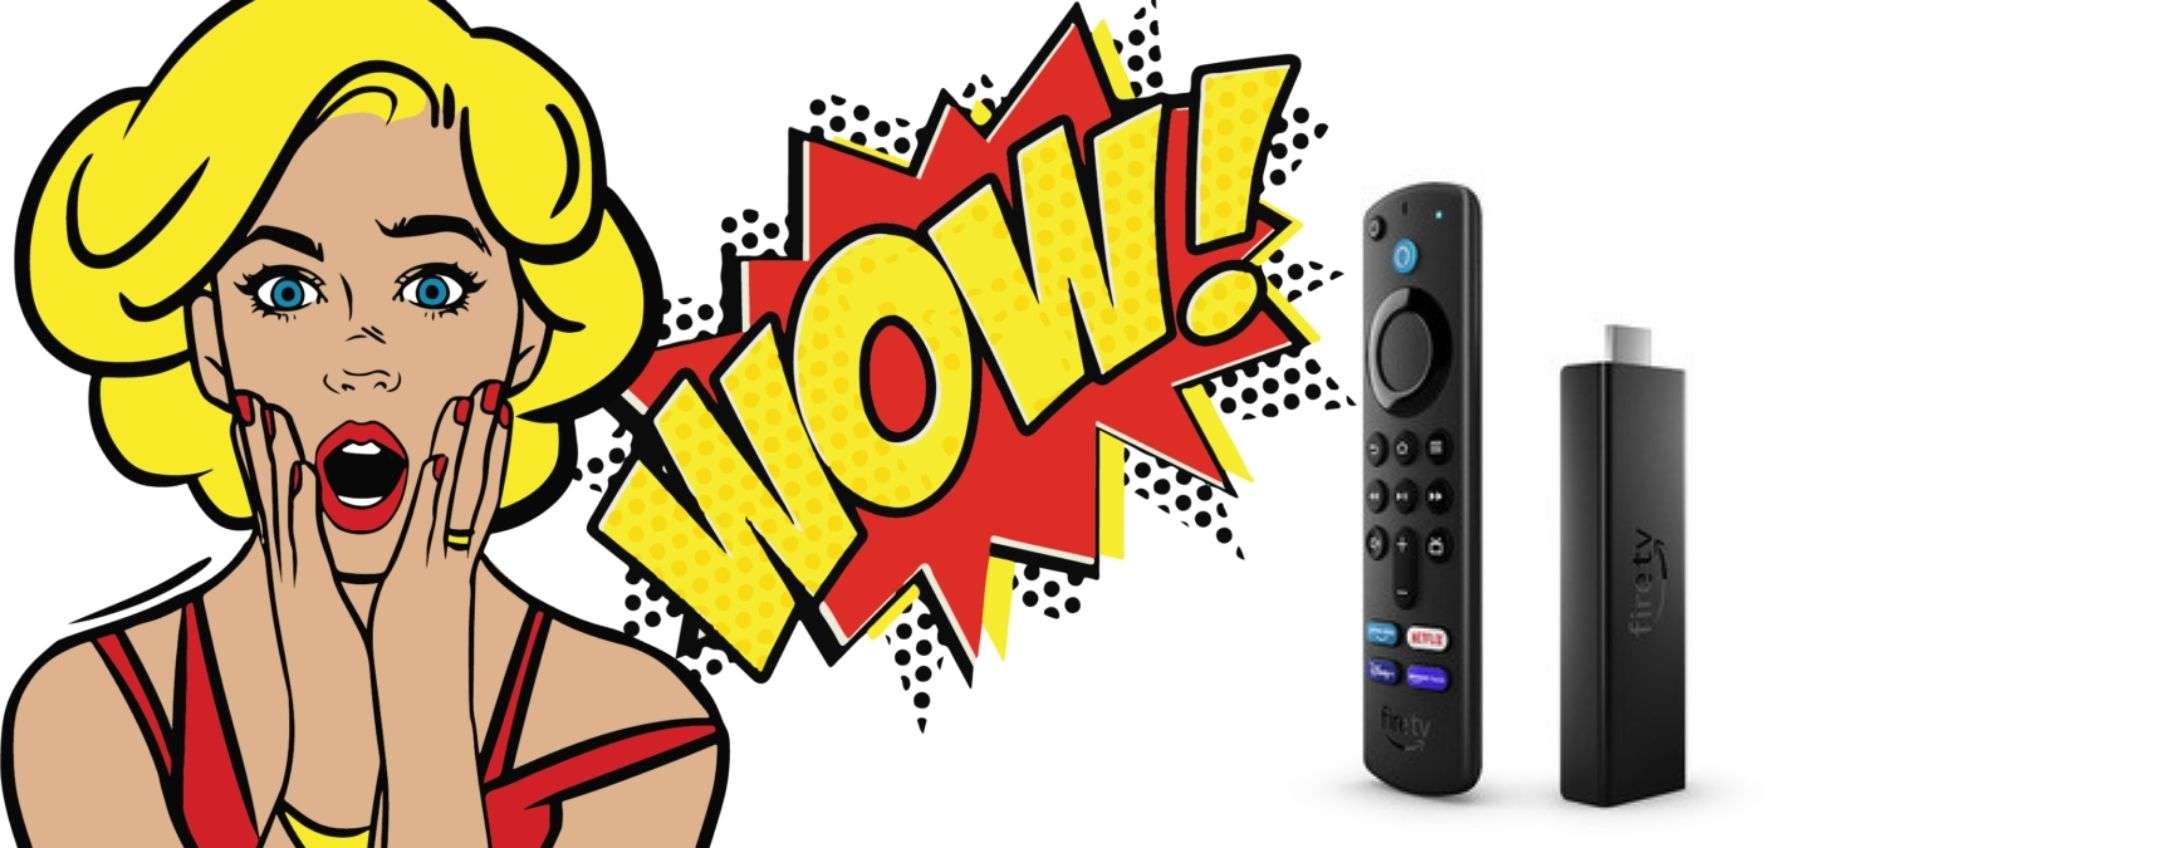 Amazon Fire TV Stick 4K su Unieuro: con 38 euro rendi smart la tua TV